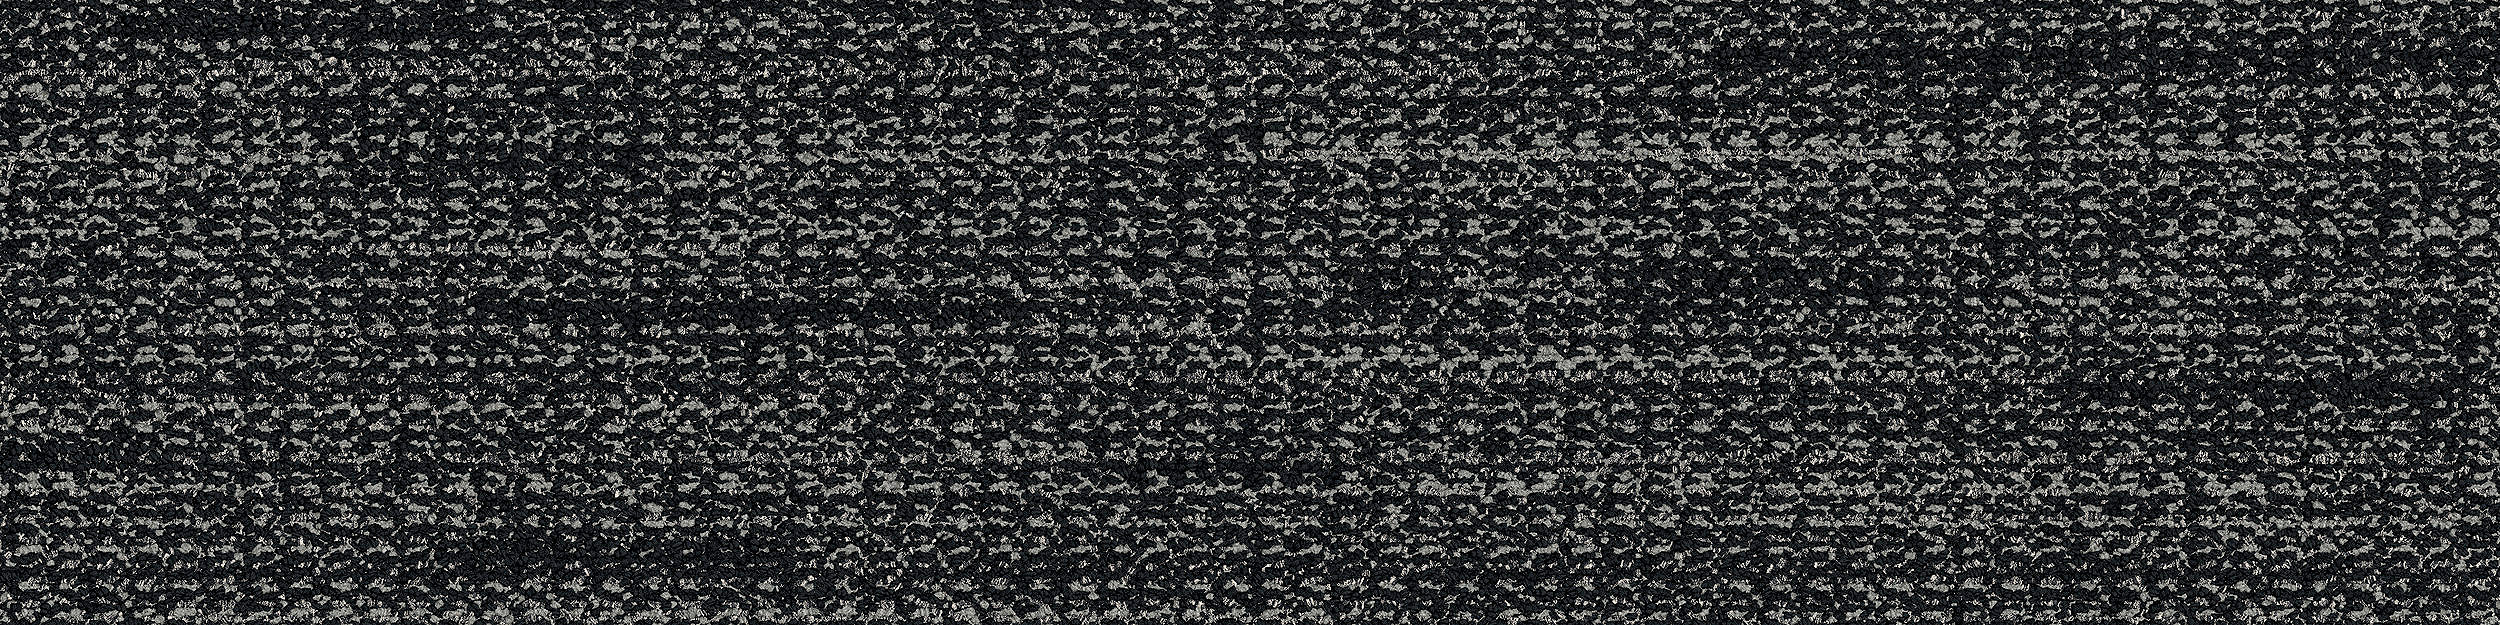 WW870 Carpet Tile In Black Weft image number 9